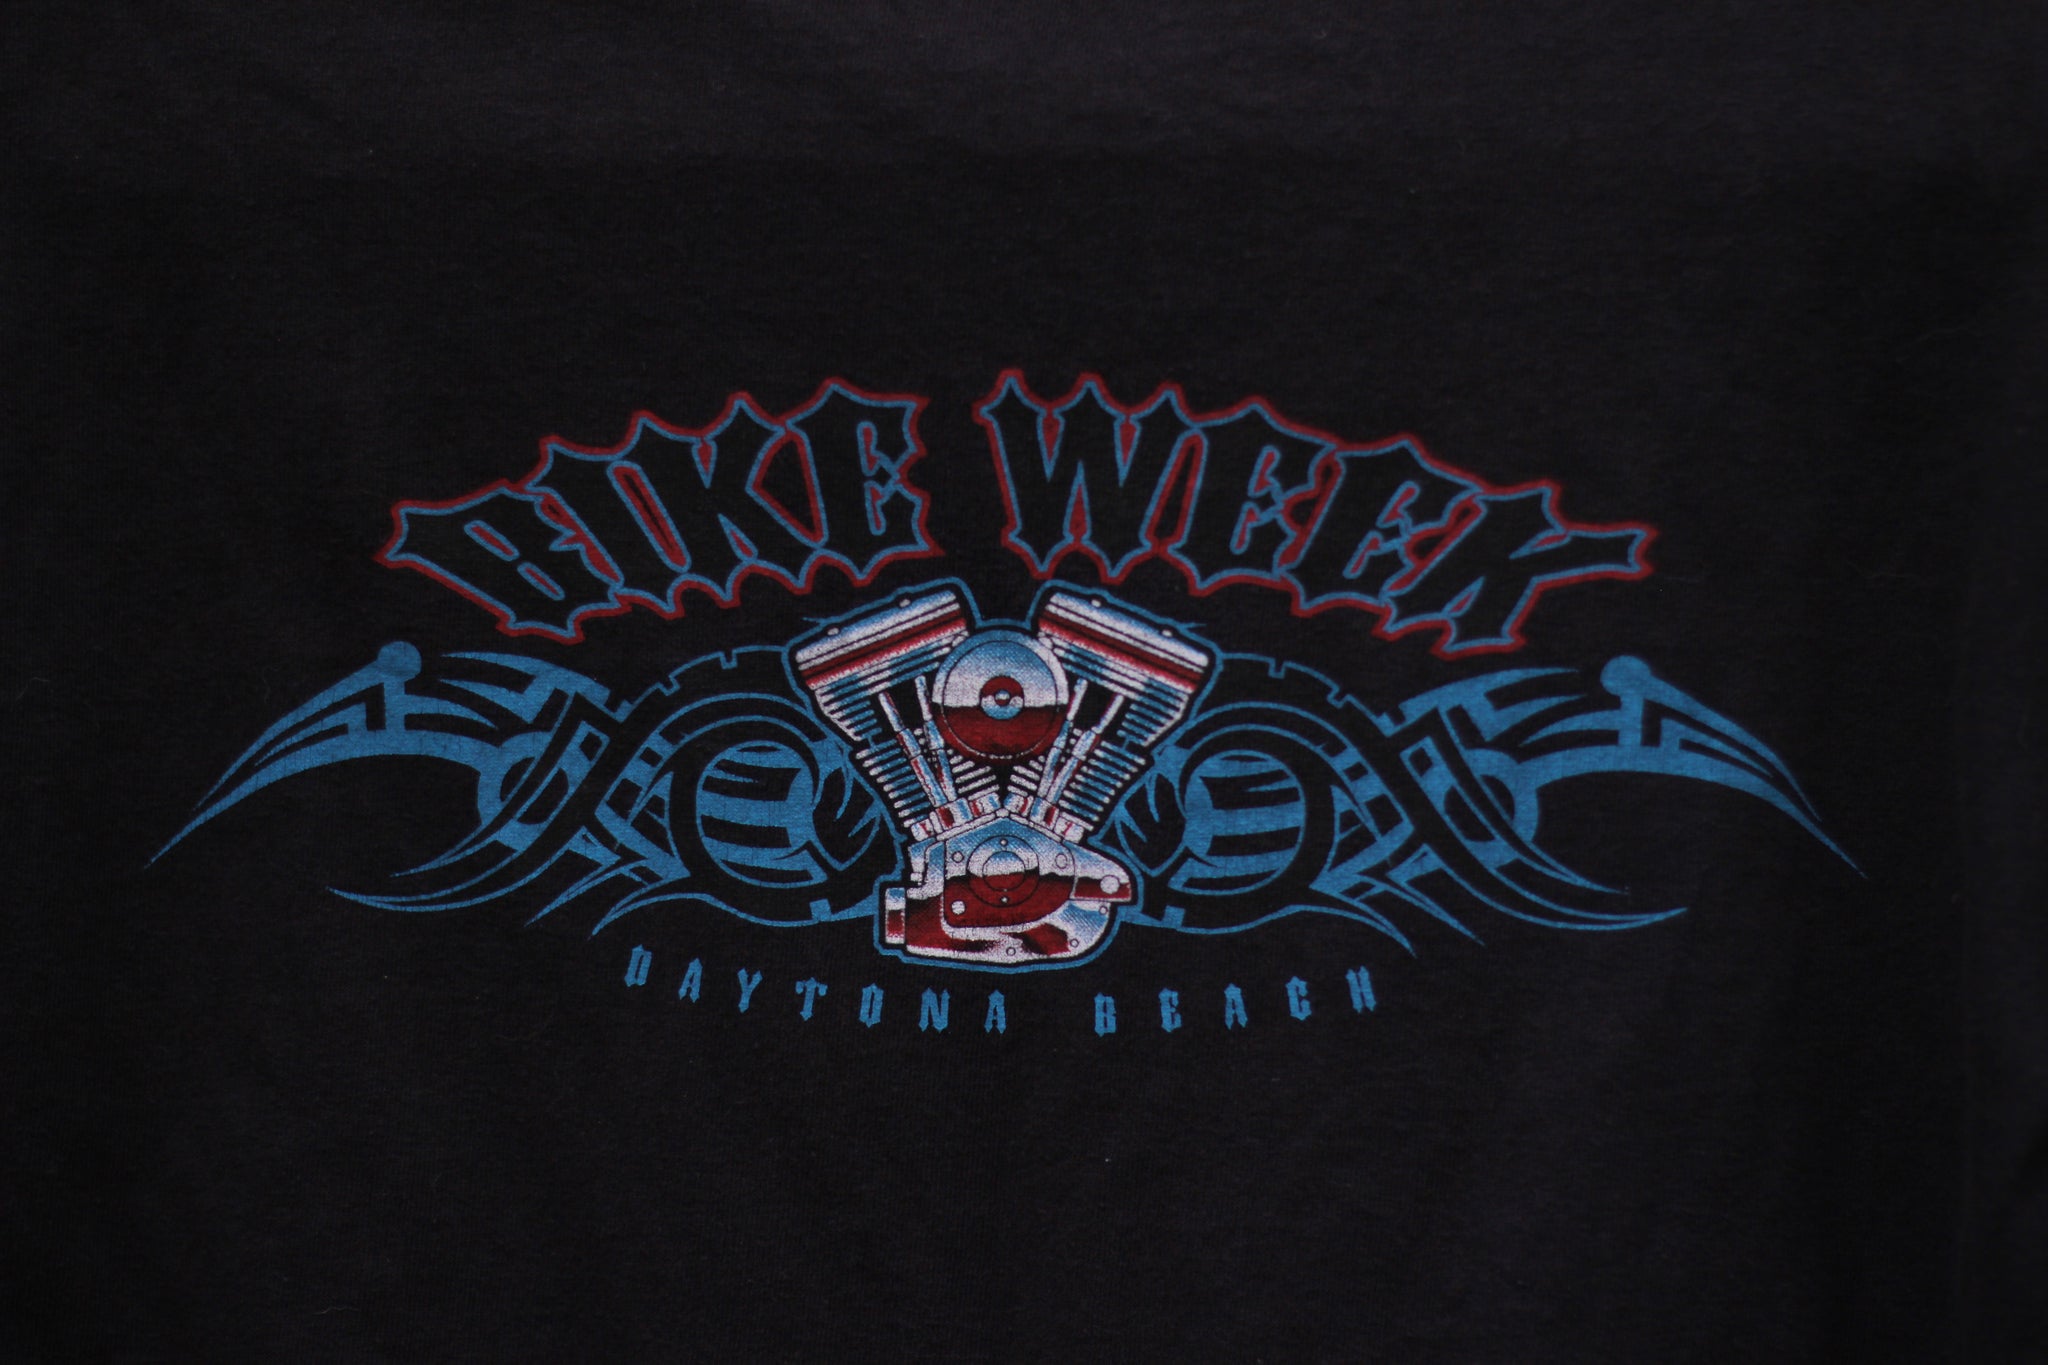 2006 Bike Week Daytona Beach Tee (M)